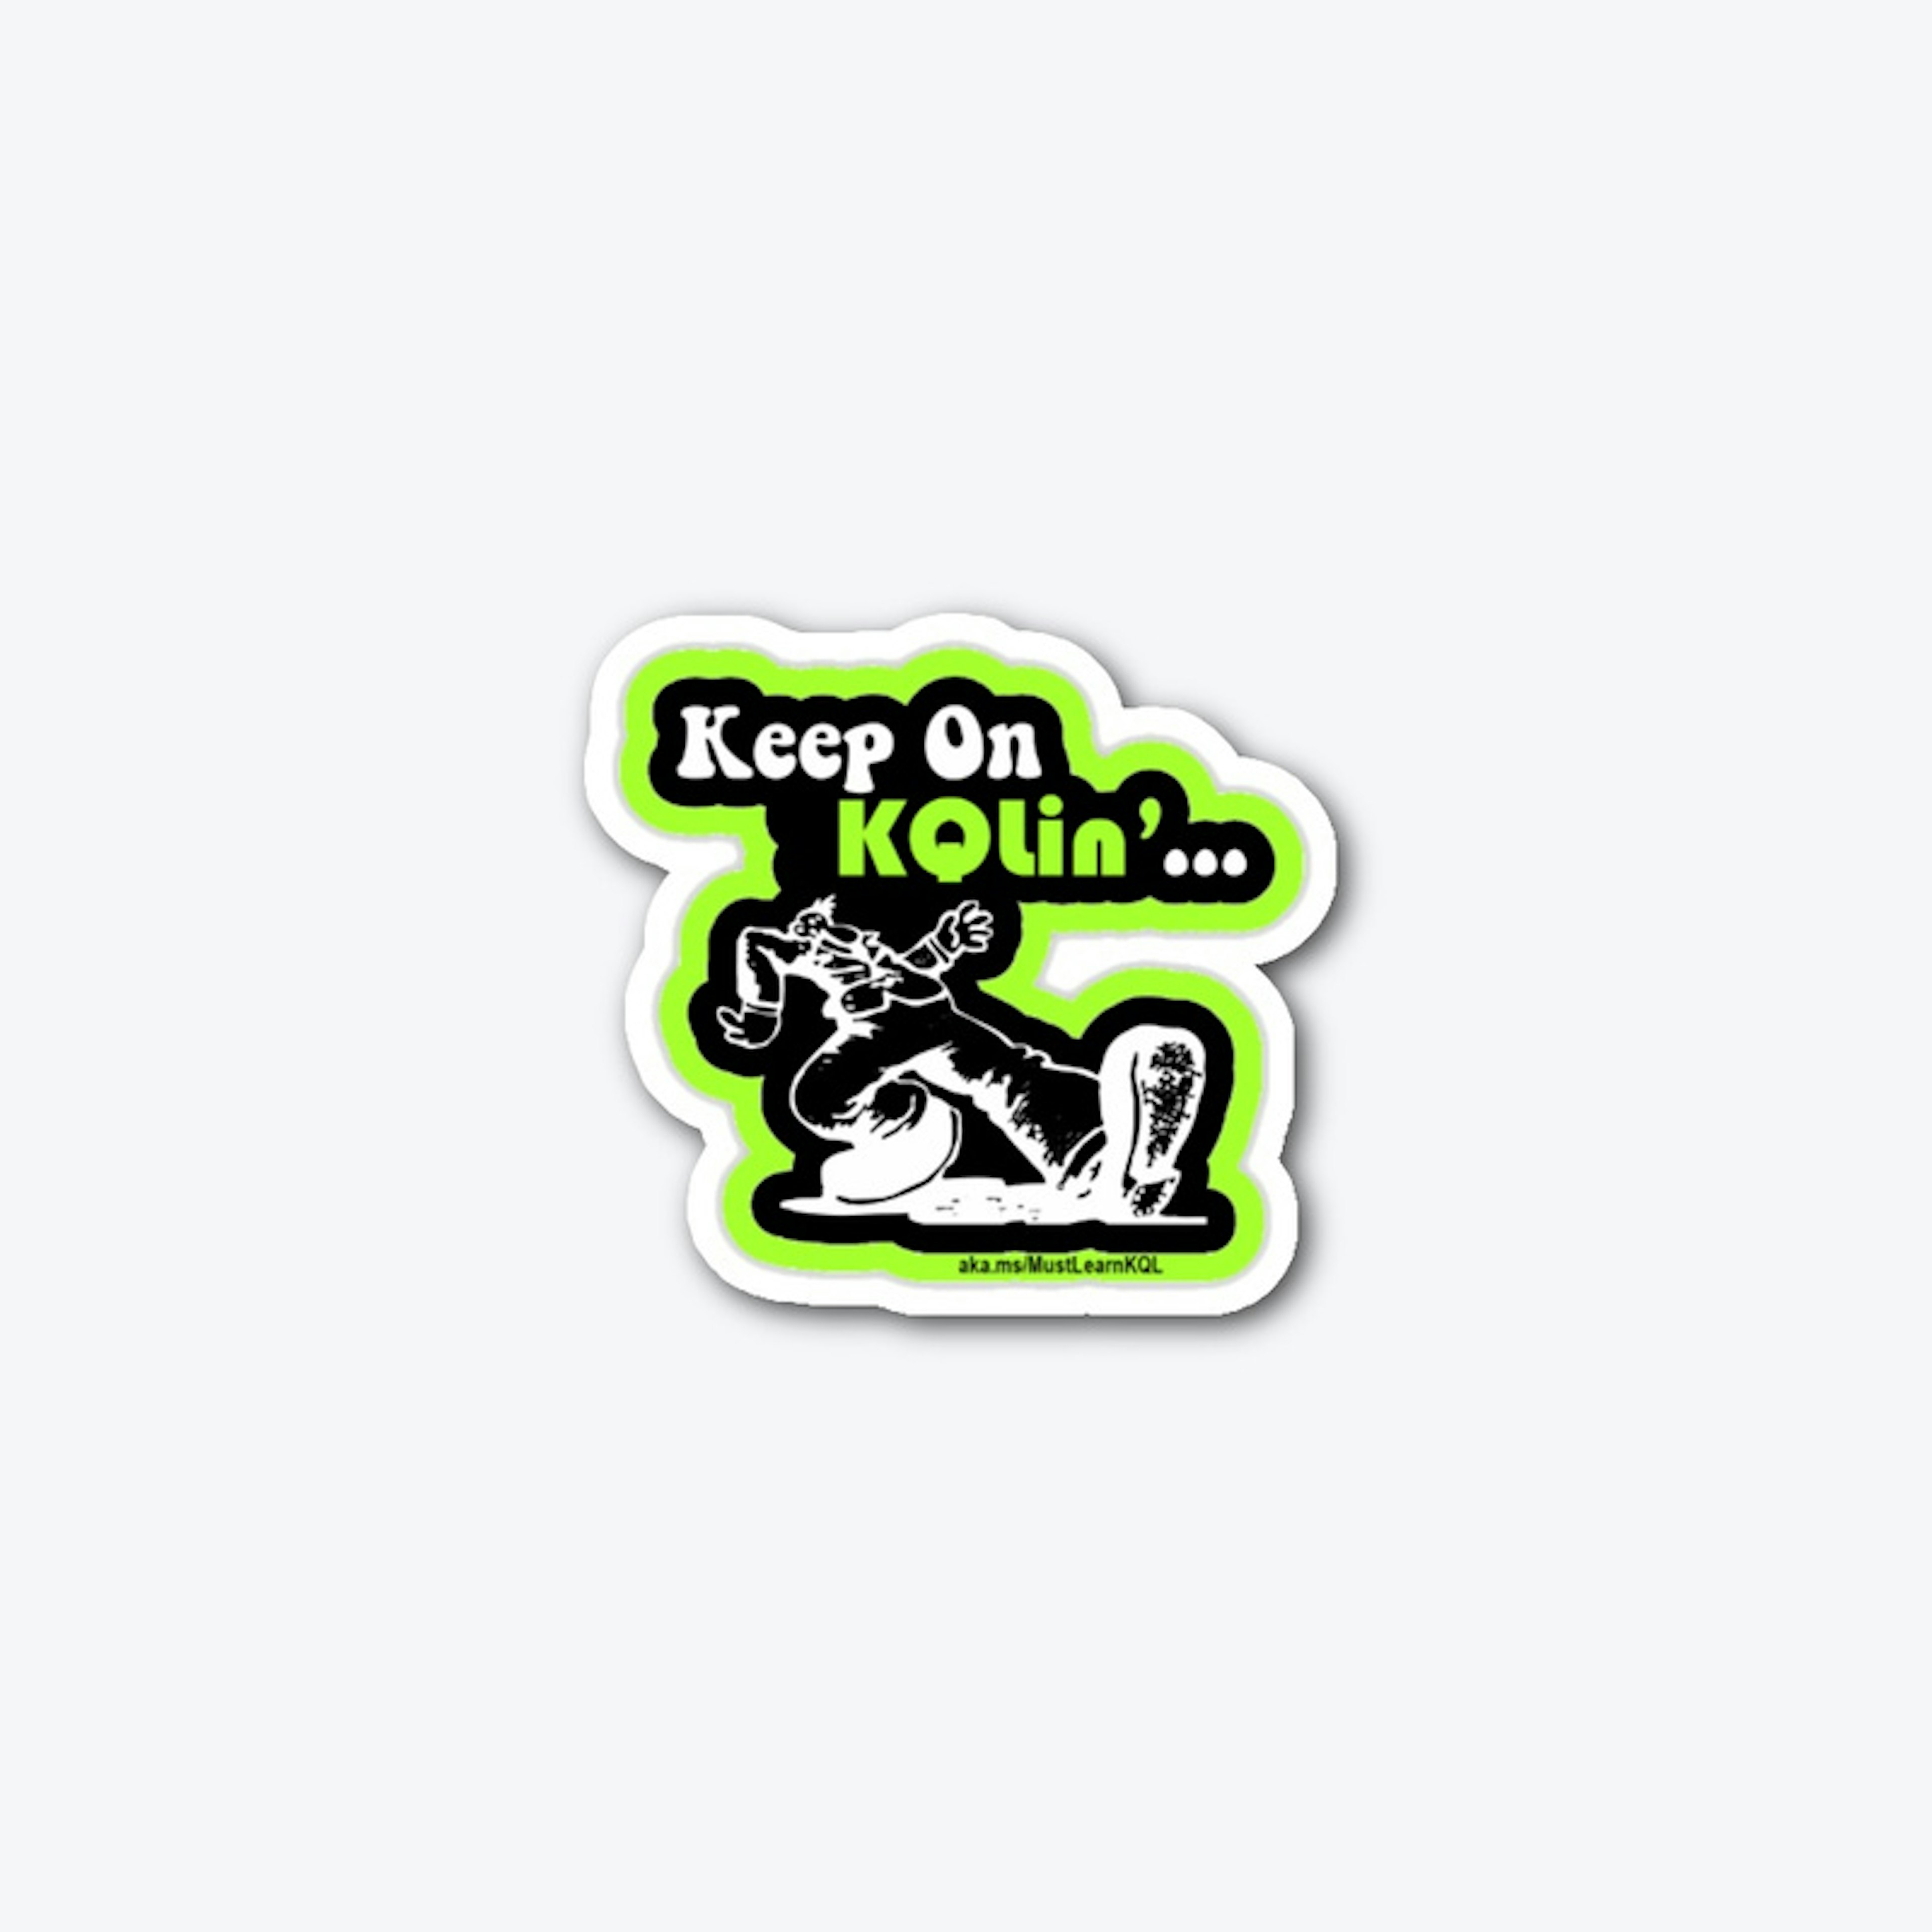 Keep on KQLin'